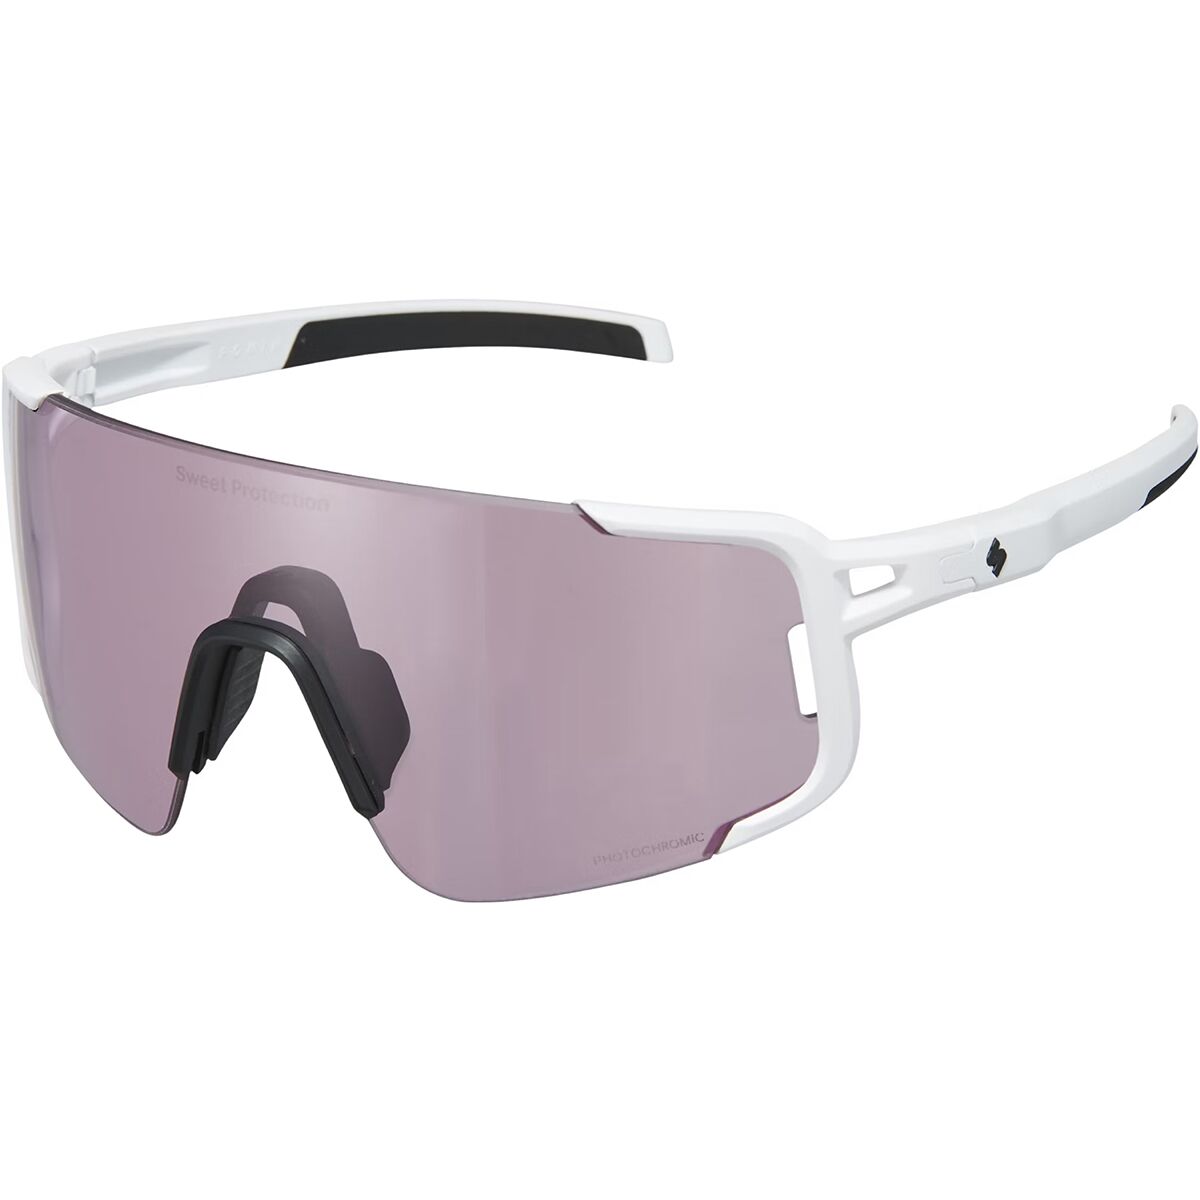 цена Фотохромные солнцезащитные очки ronin rig Sweet Protection, цвет rig photochromic/matte white